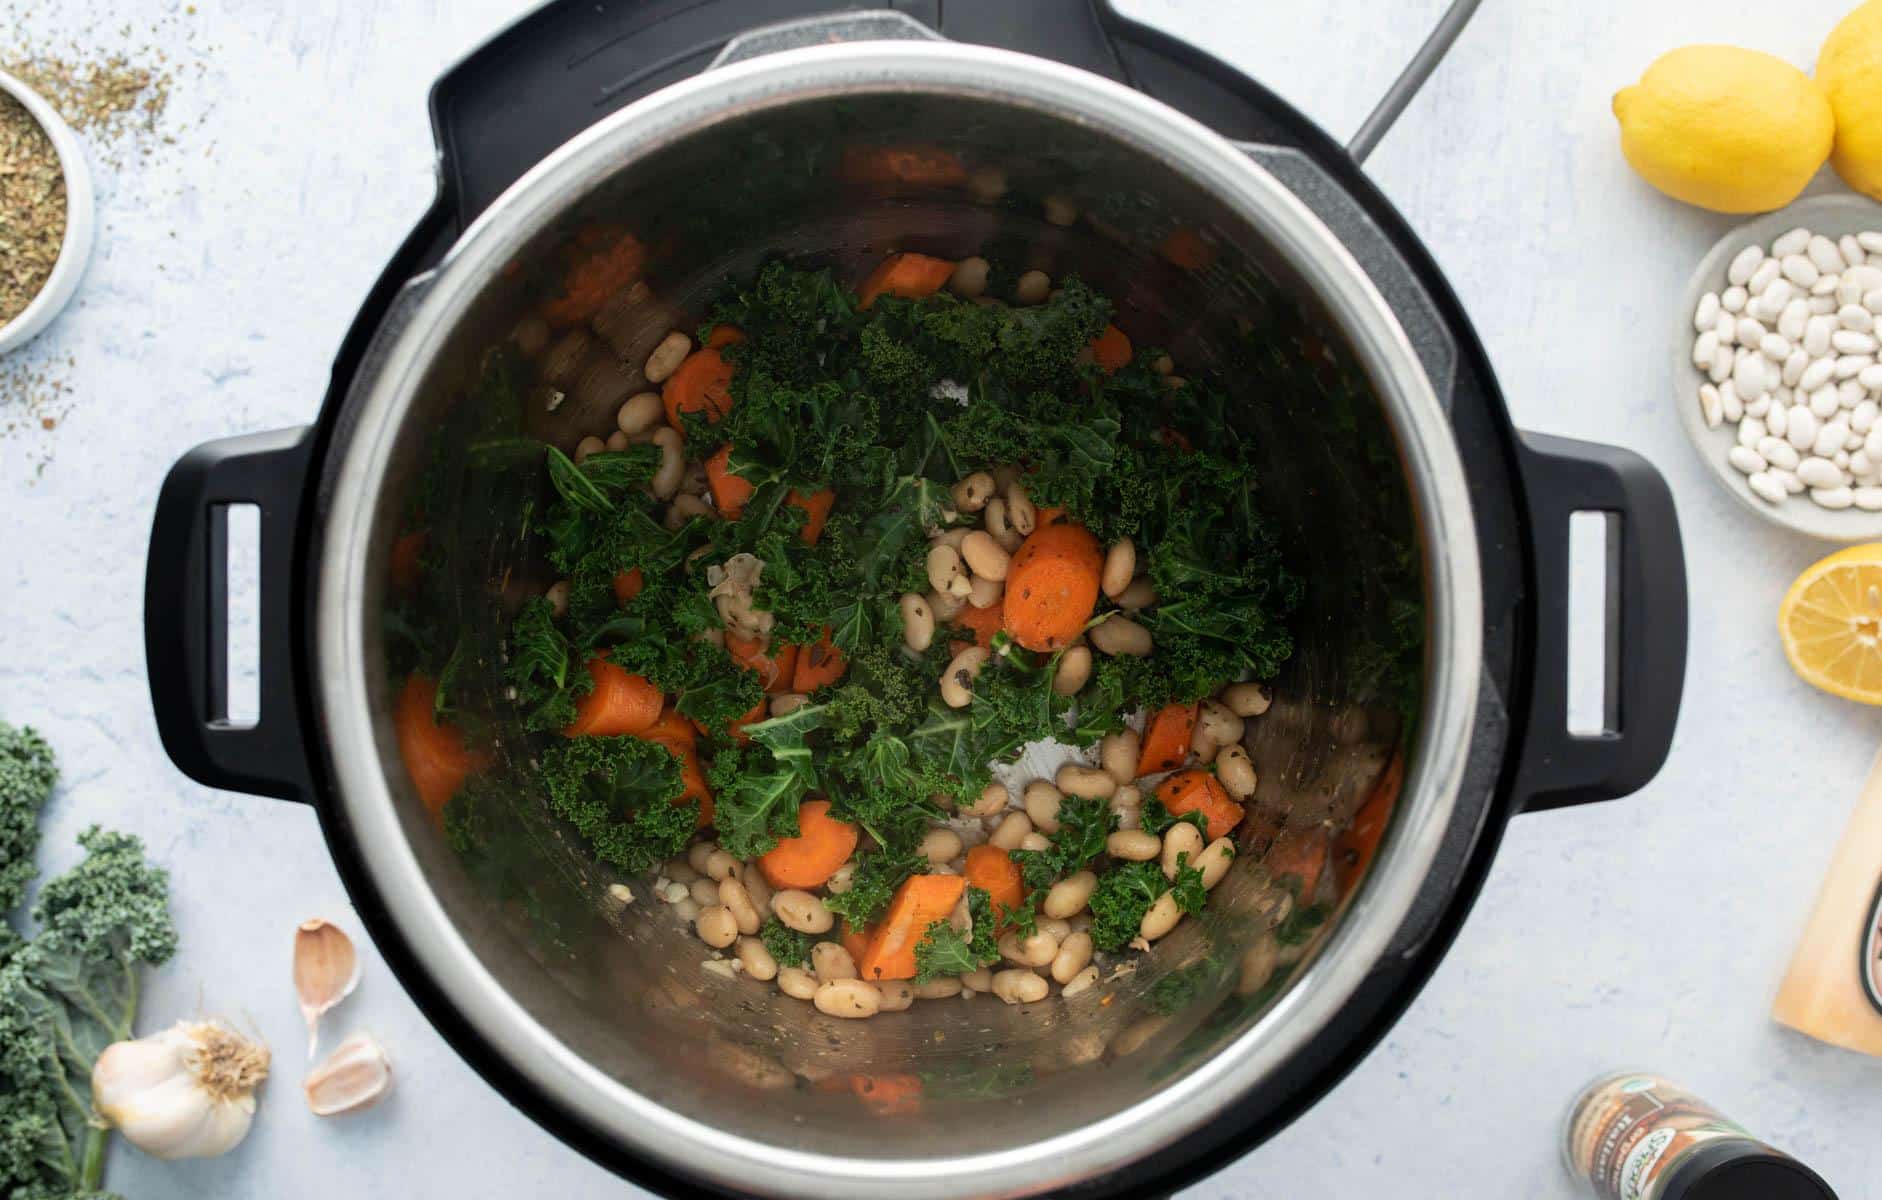 instant pot bowl full of beans, vegetables